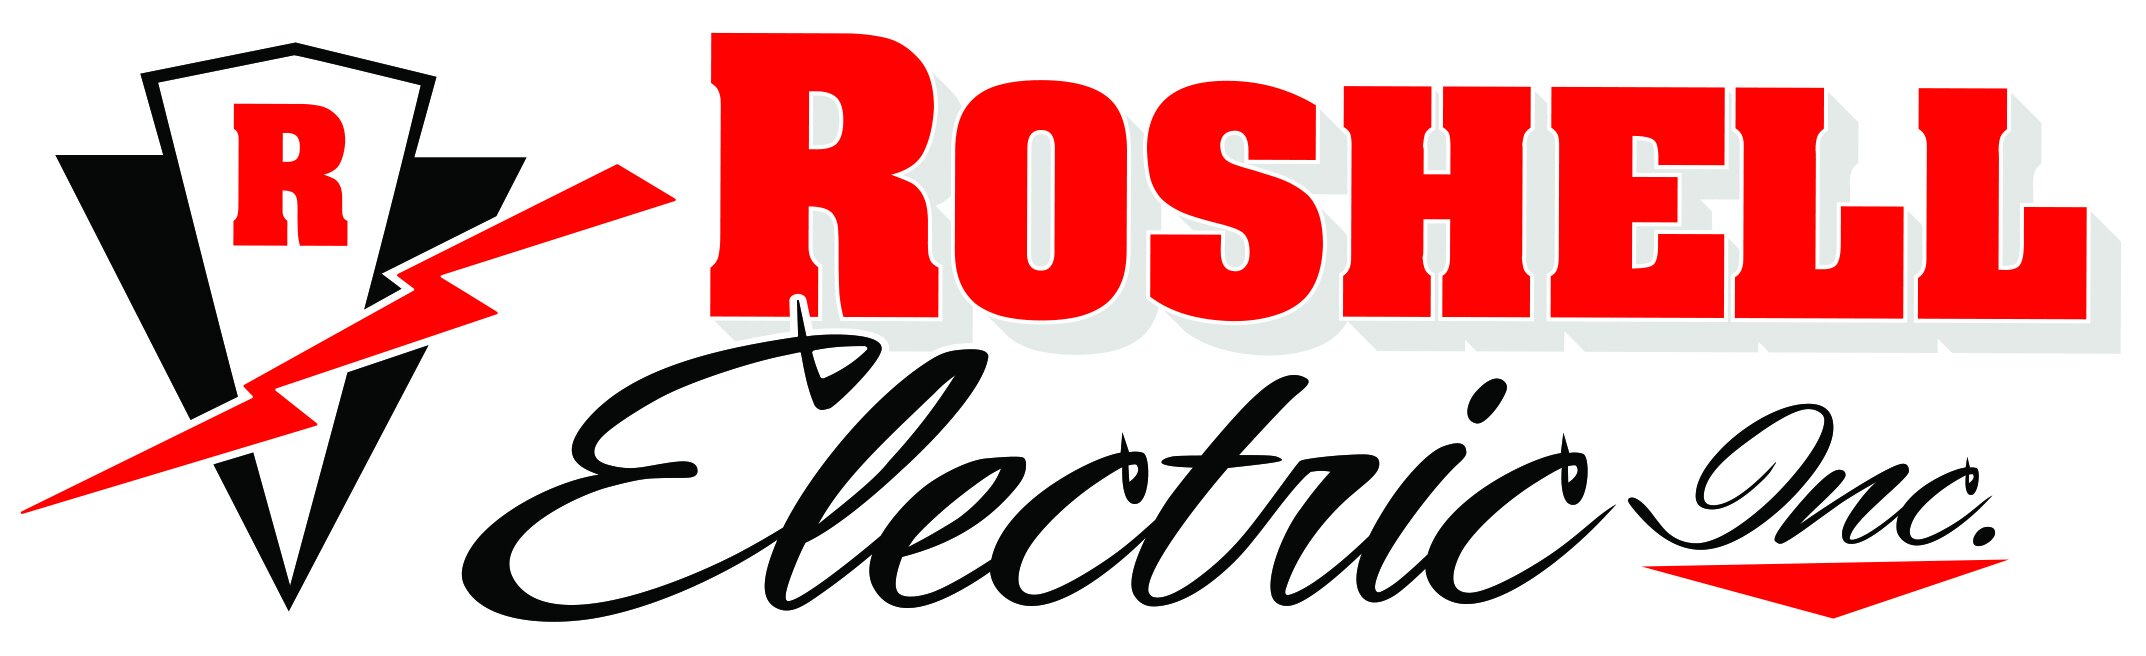 Roshell Electric.jpg